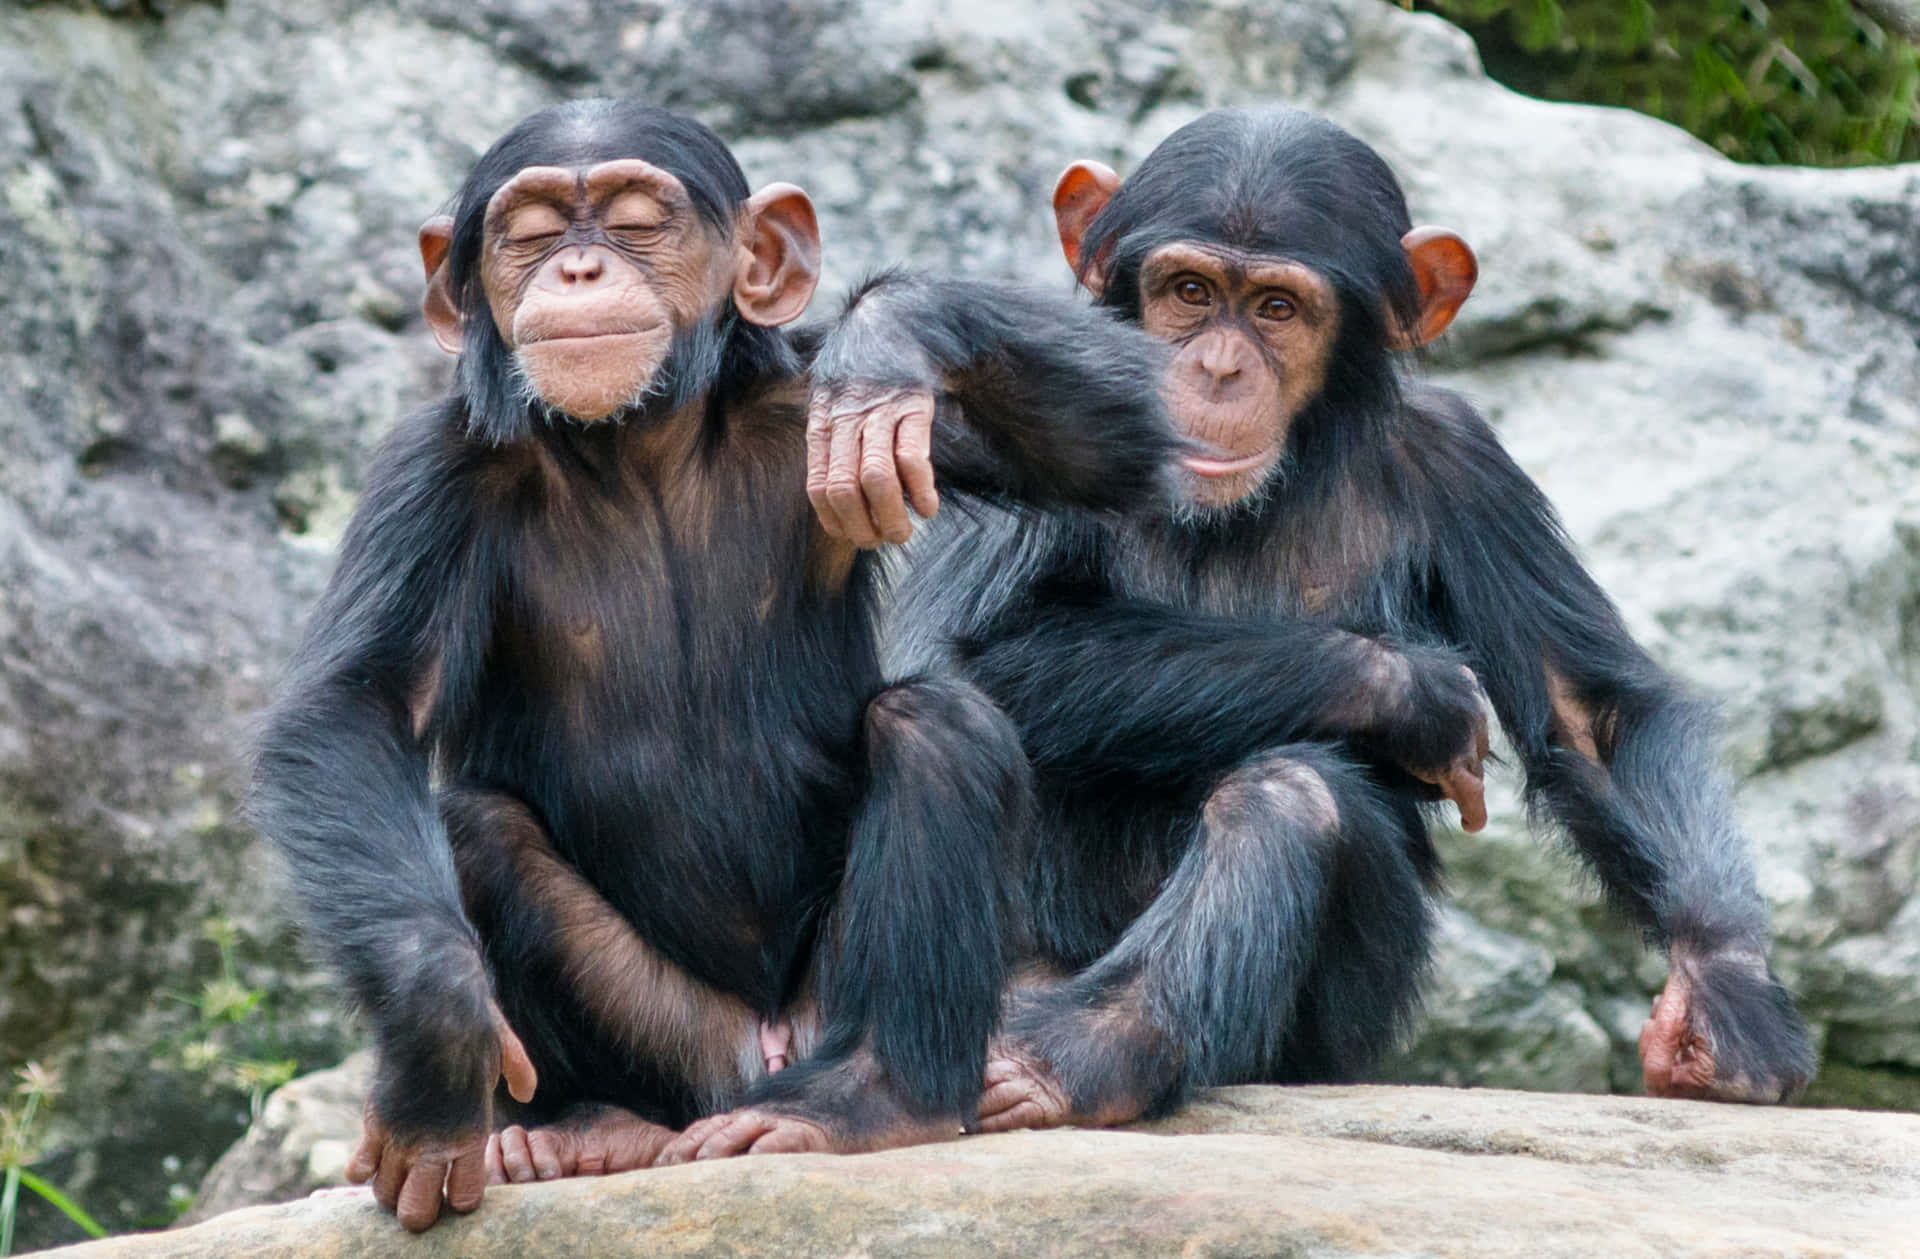 A closeup of a mischievous chimpanzee.